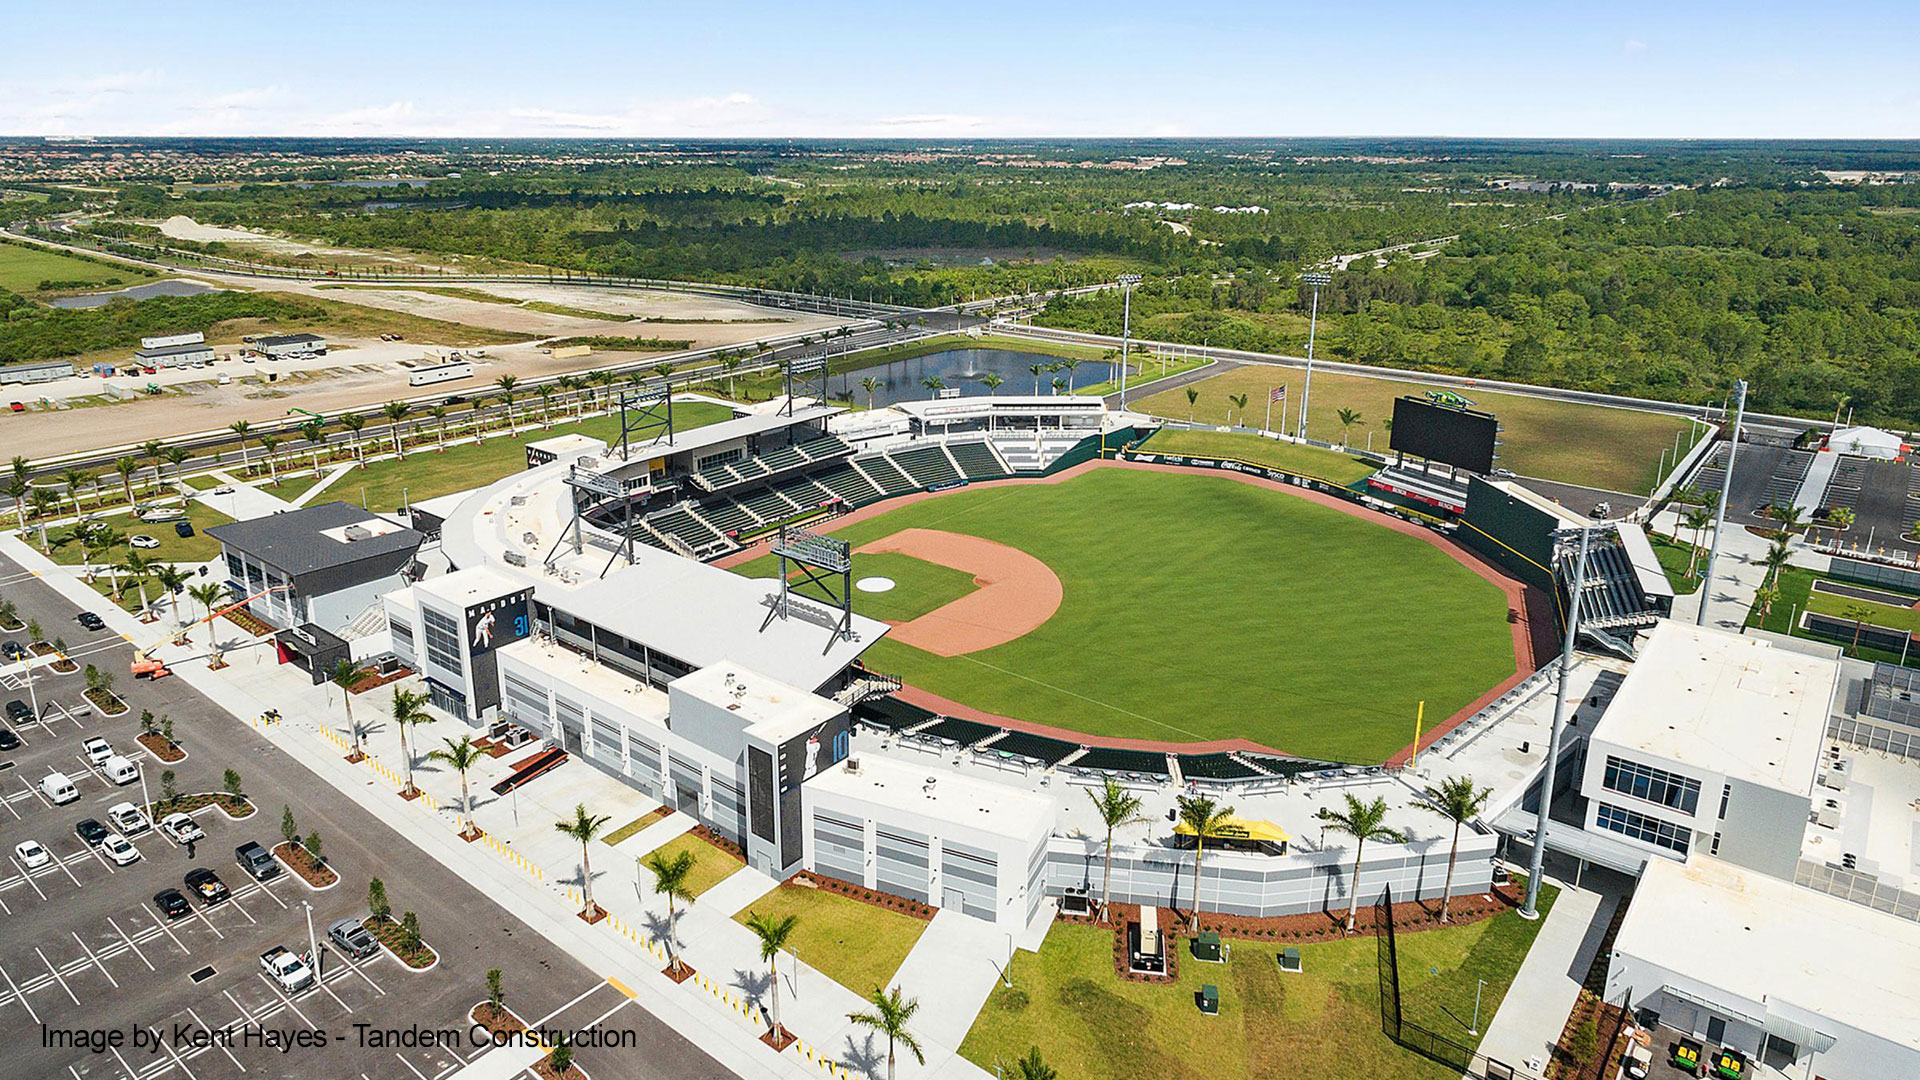 BASEBALL: New Braves spring training ballpark named CoolToday Park